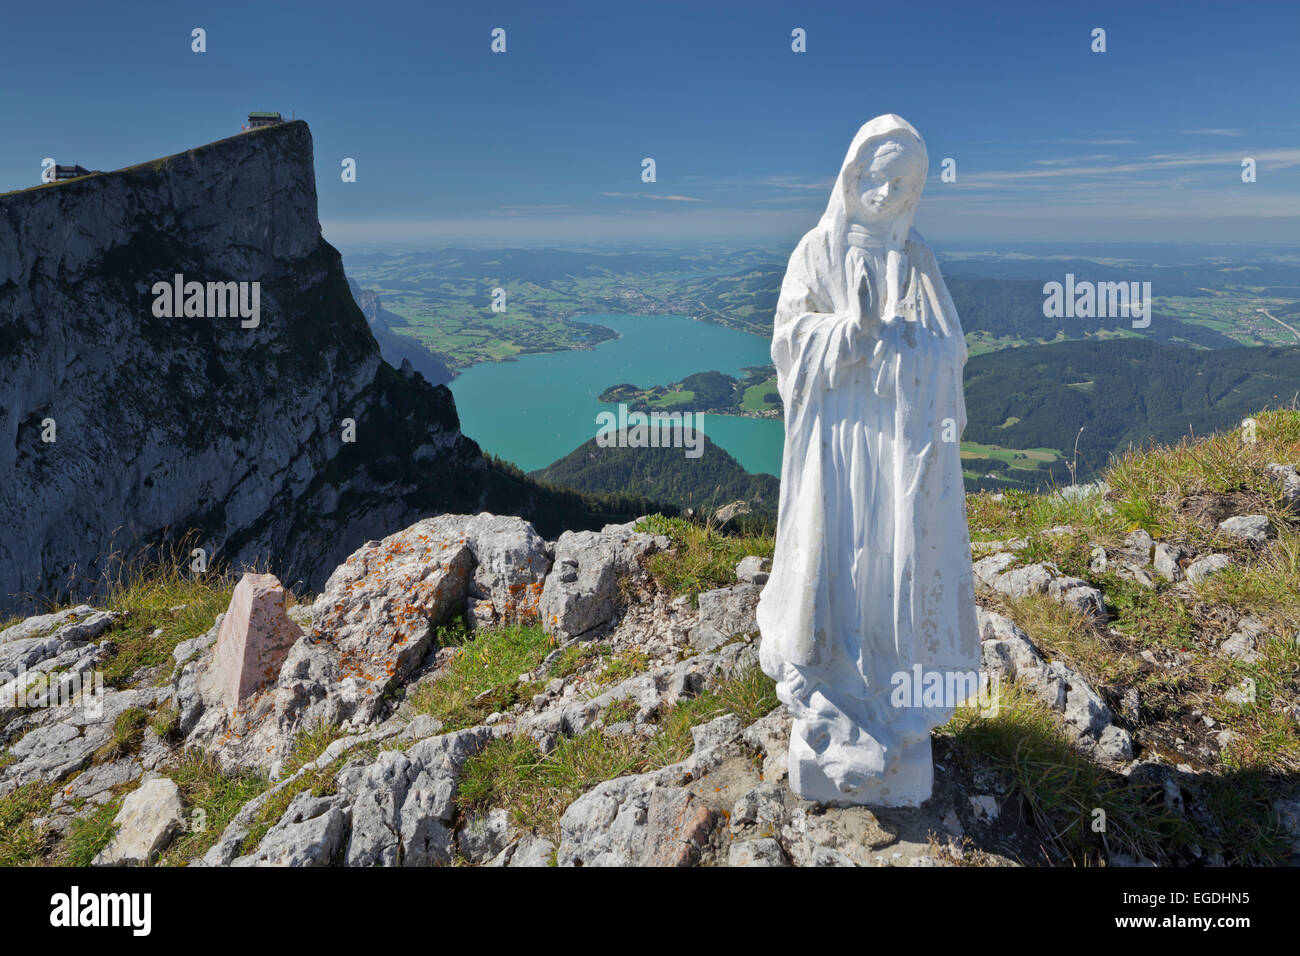 Weiße Madonnenfigur am Schafberg, See Mondsee, Salzkammergut, Salzburger Land, Österreich Stockfoto